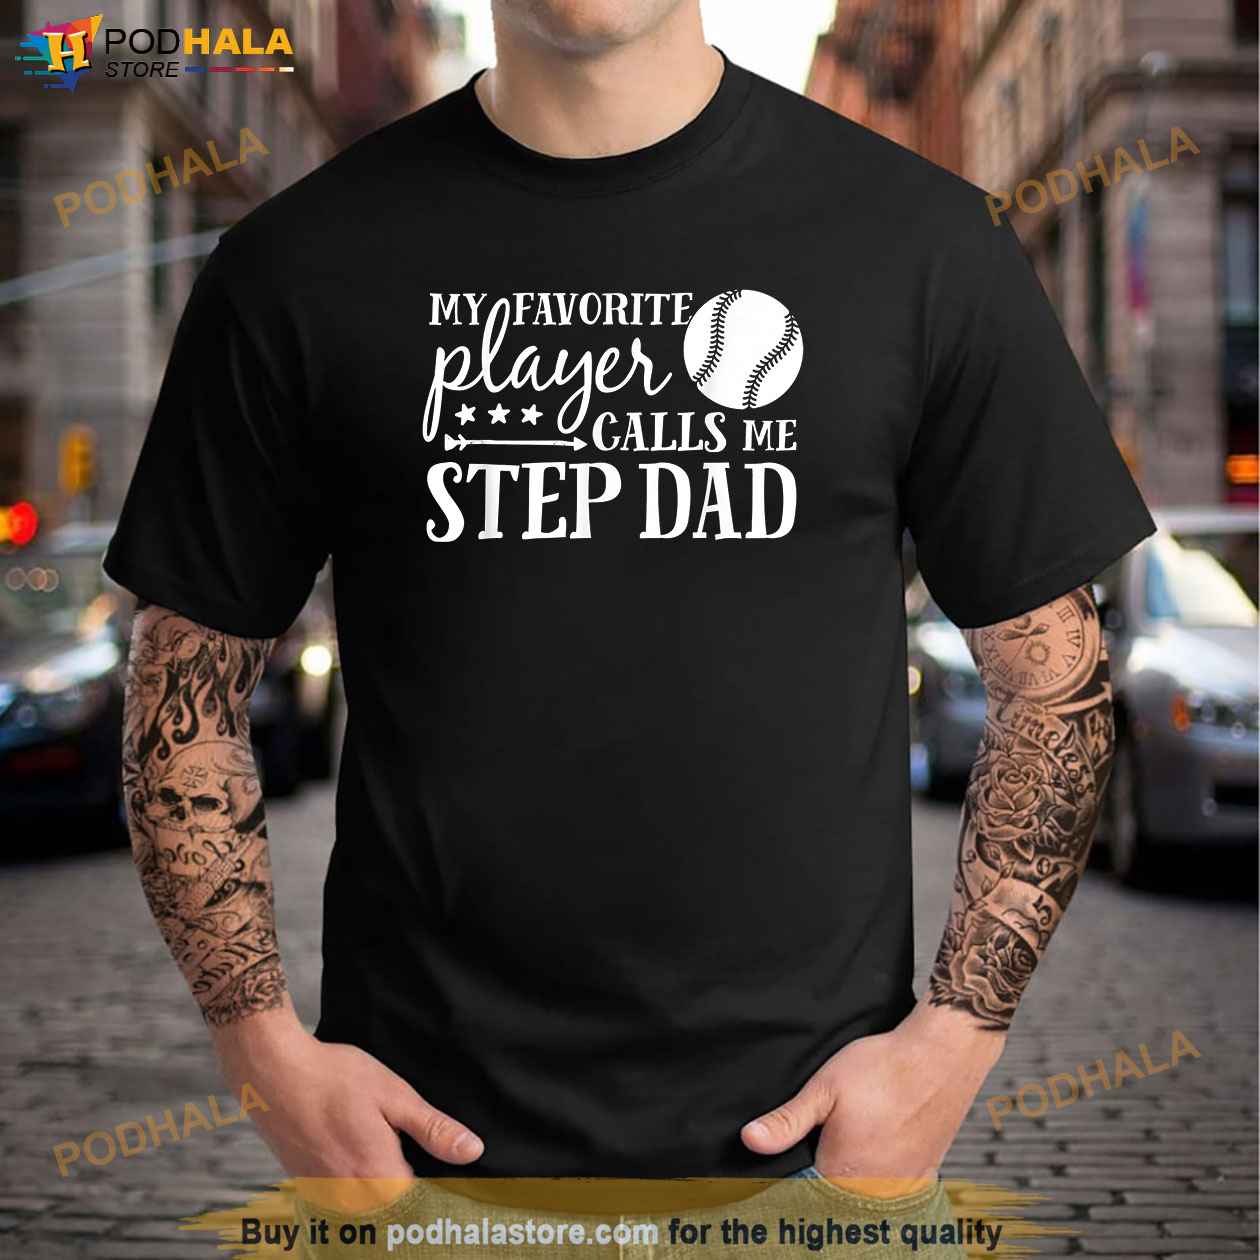 Baseball Dad Shirt, Dad Baseball Shirt